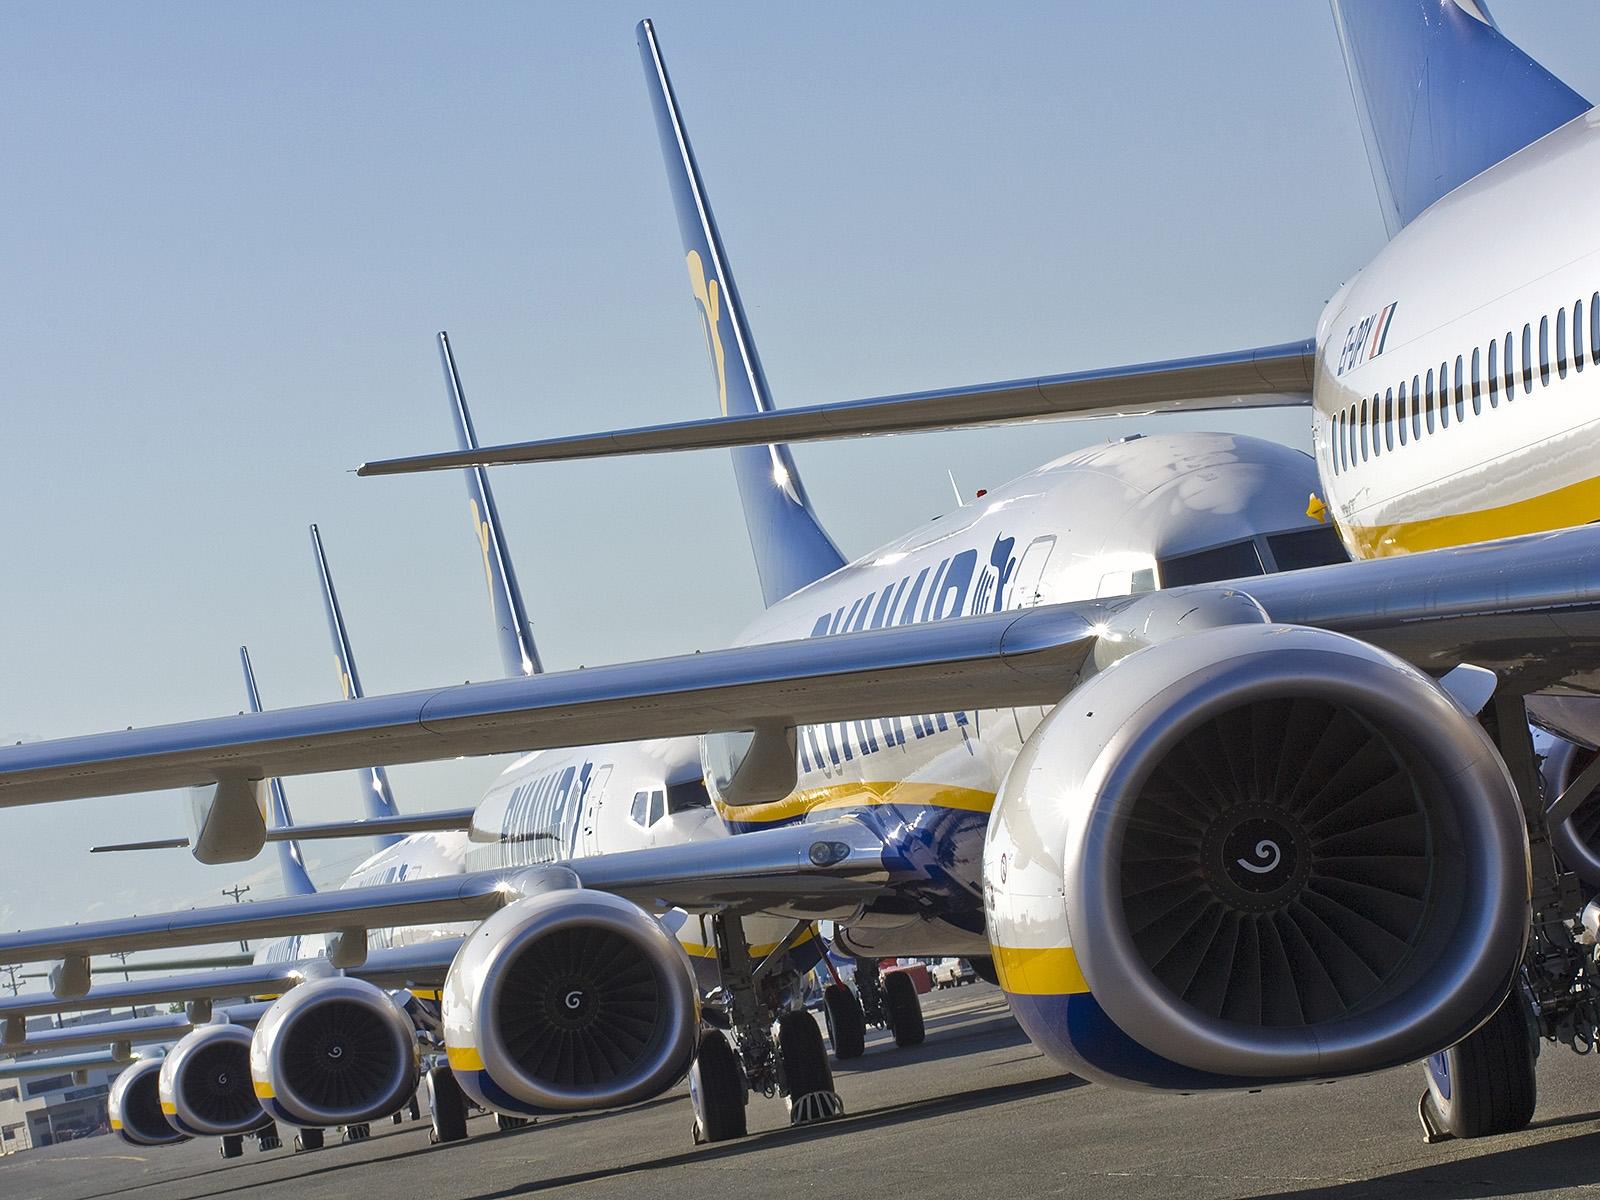 Ryanair anuncia tres nuevas rutas para la temporada de invierno 2015 dese Alicante y Málaga | Aviacol.net el Portal de la Aviación